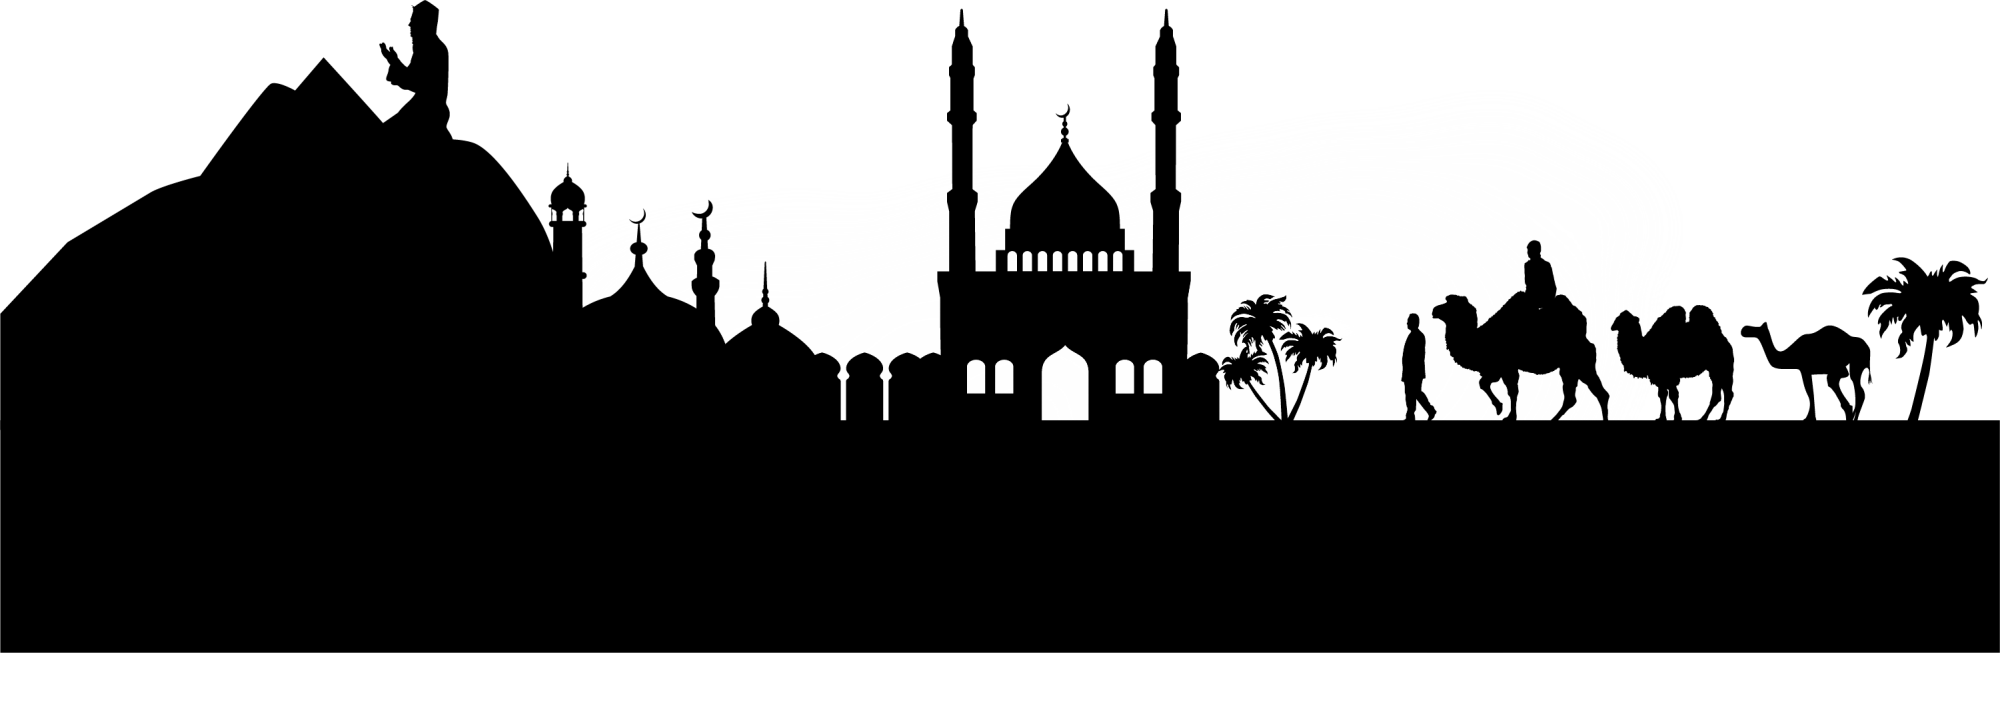 logo masjid, masjid drawing cairo frames illustrations images 31865